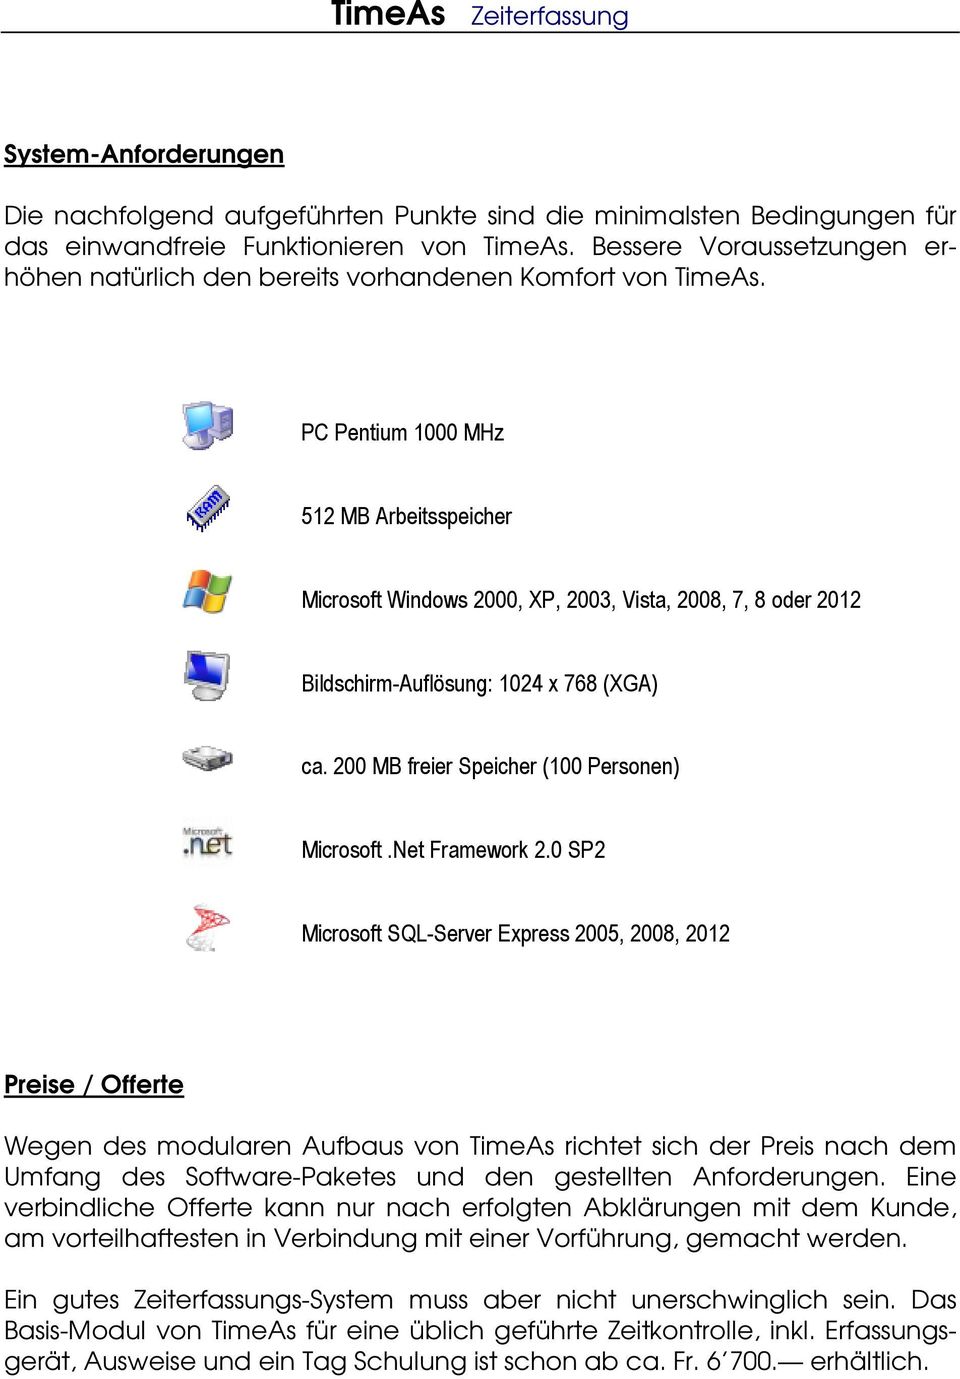 PC Pentium 1000 MHz 512 MB Arbeitsspeicher Microsoft Windows 2000, XP, 2003, Vista, 2008, 7, 8 oder 2012 Bildschirm-Auflösung: 1024 x 768 (XGA) ca. 200 MB freier Speicher (100 Personen) Microsoft.